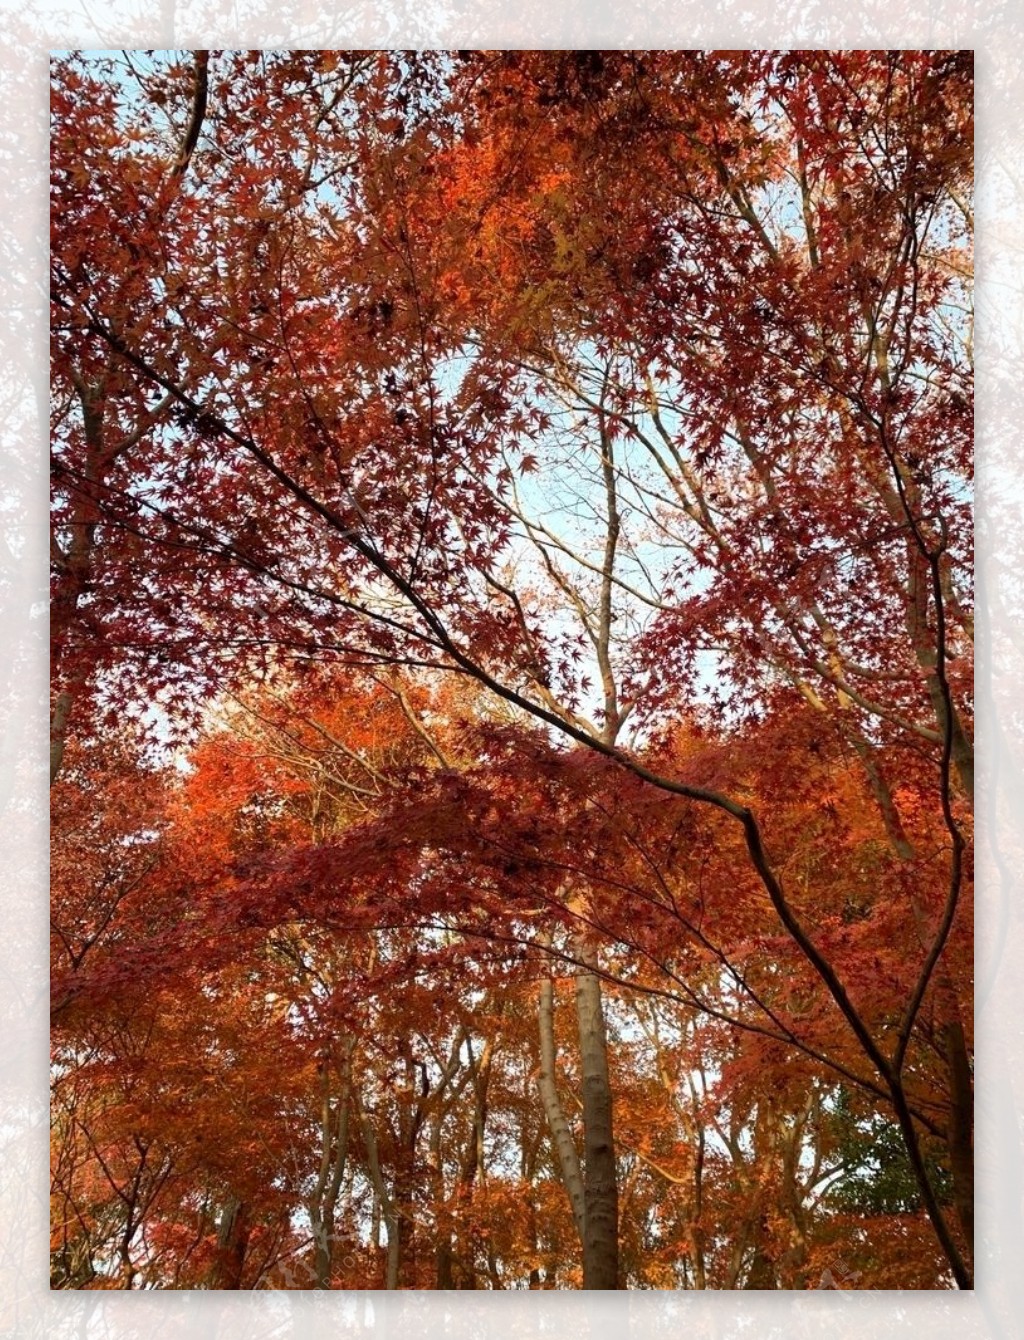 秋天园林里的枫叶树林